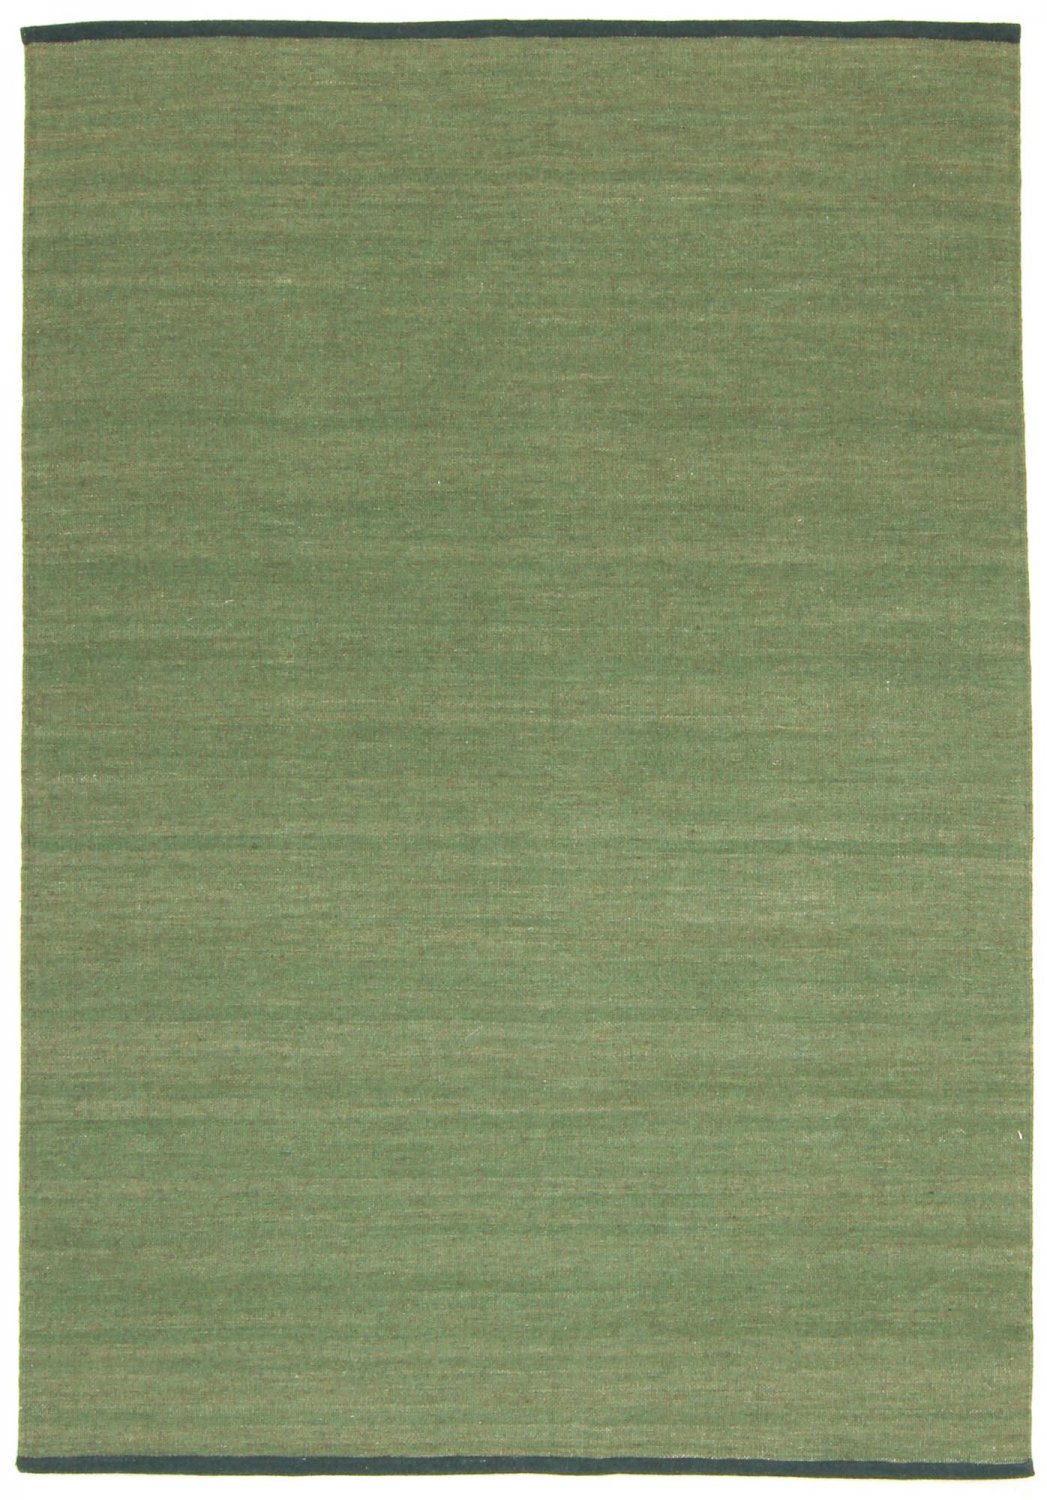 Uldtæppe - Kandia (grøn)